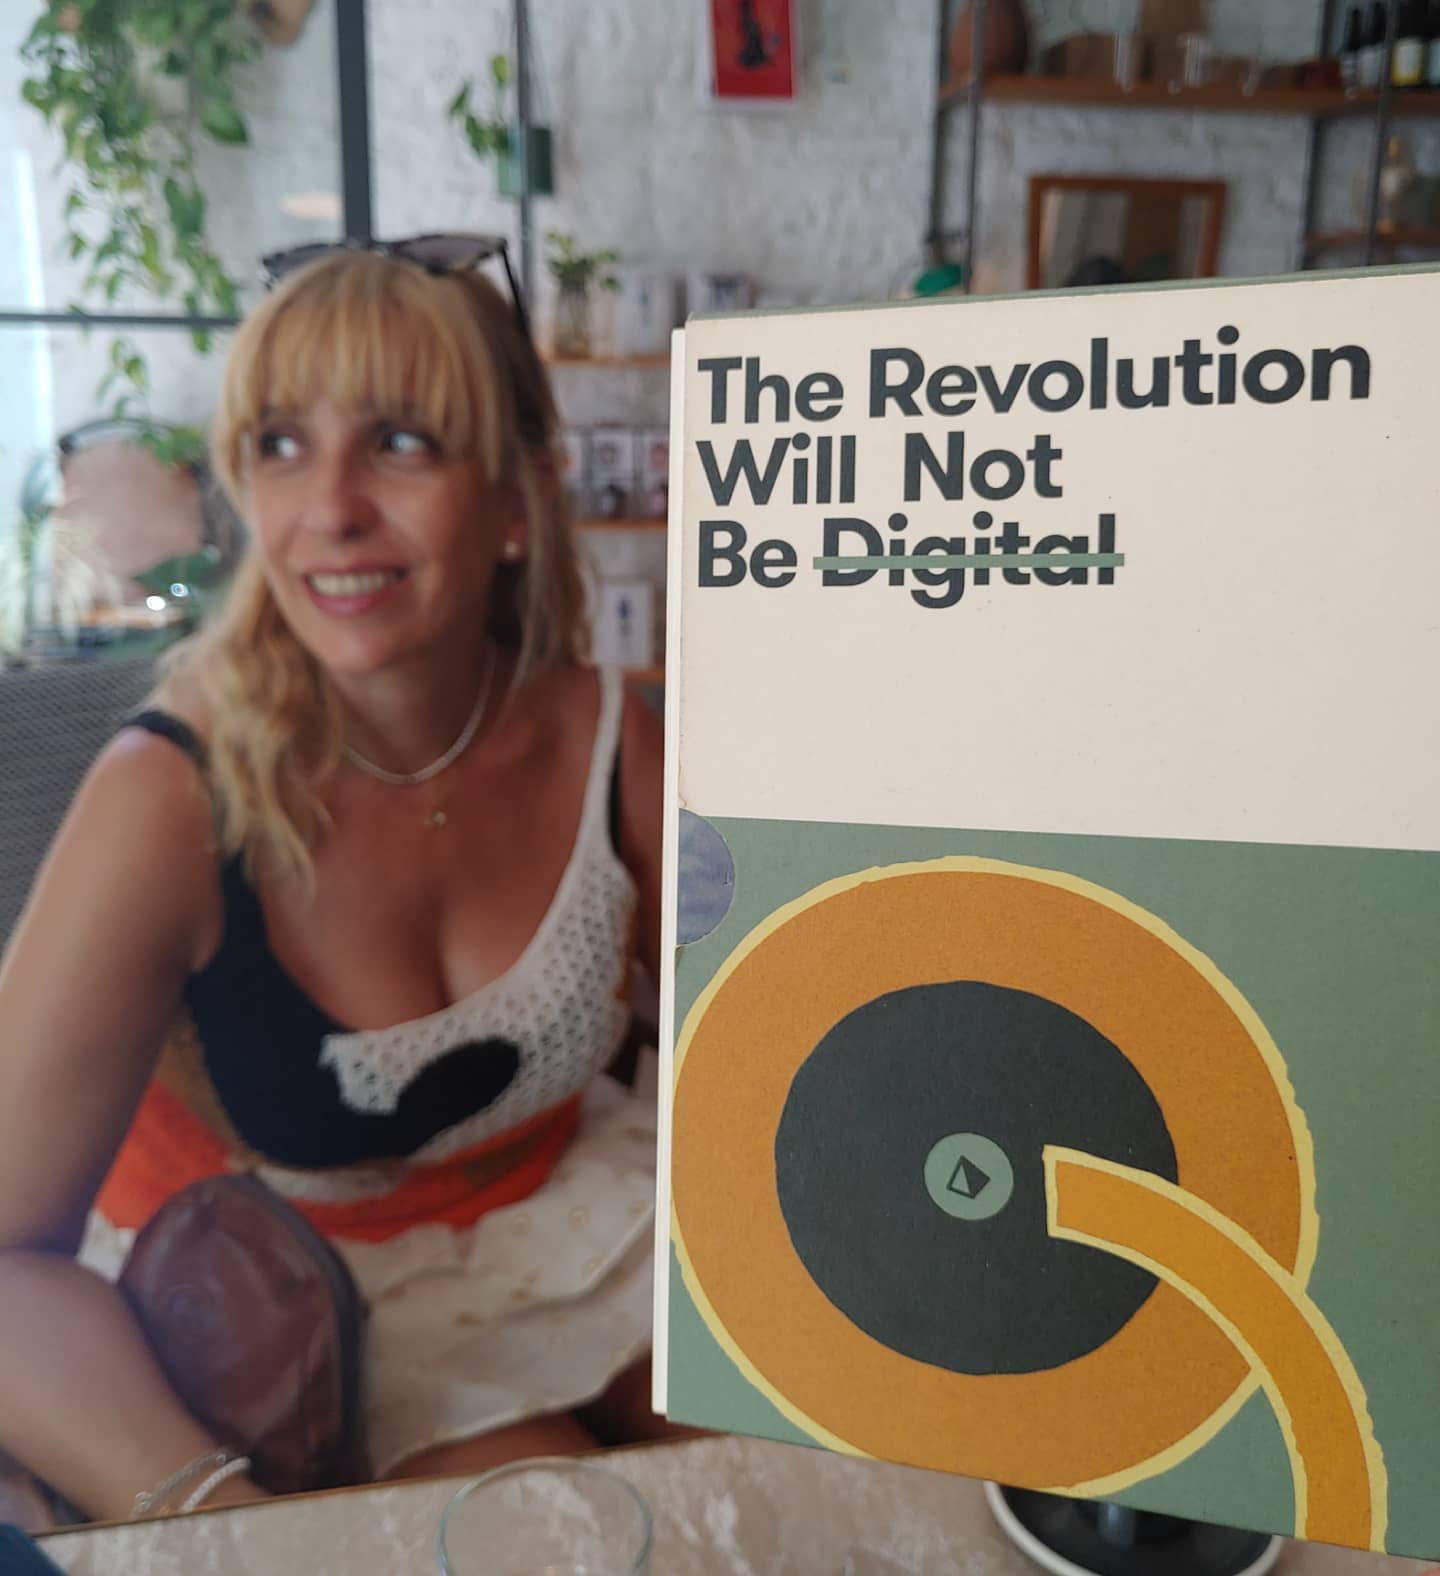 Por si no te habías dado cuenta, la revolución nunca será digital